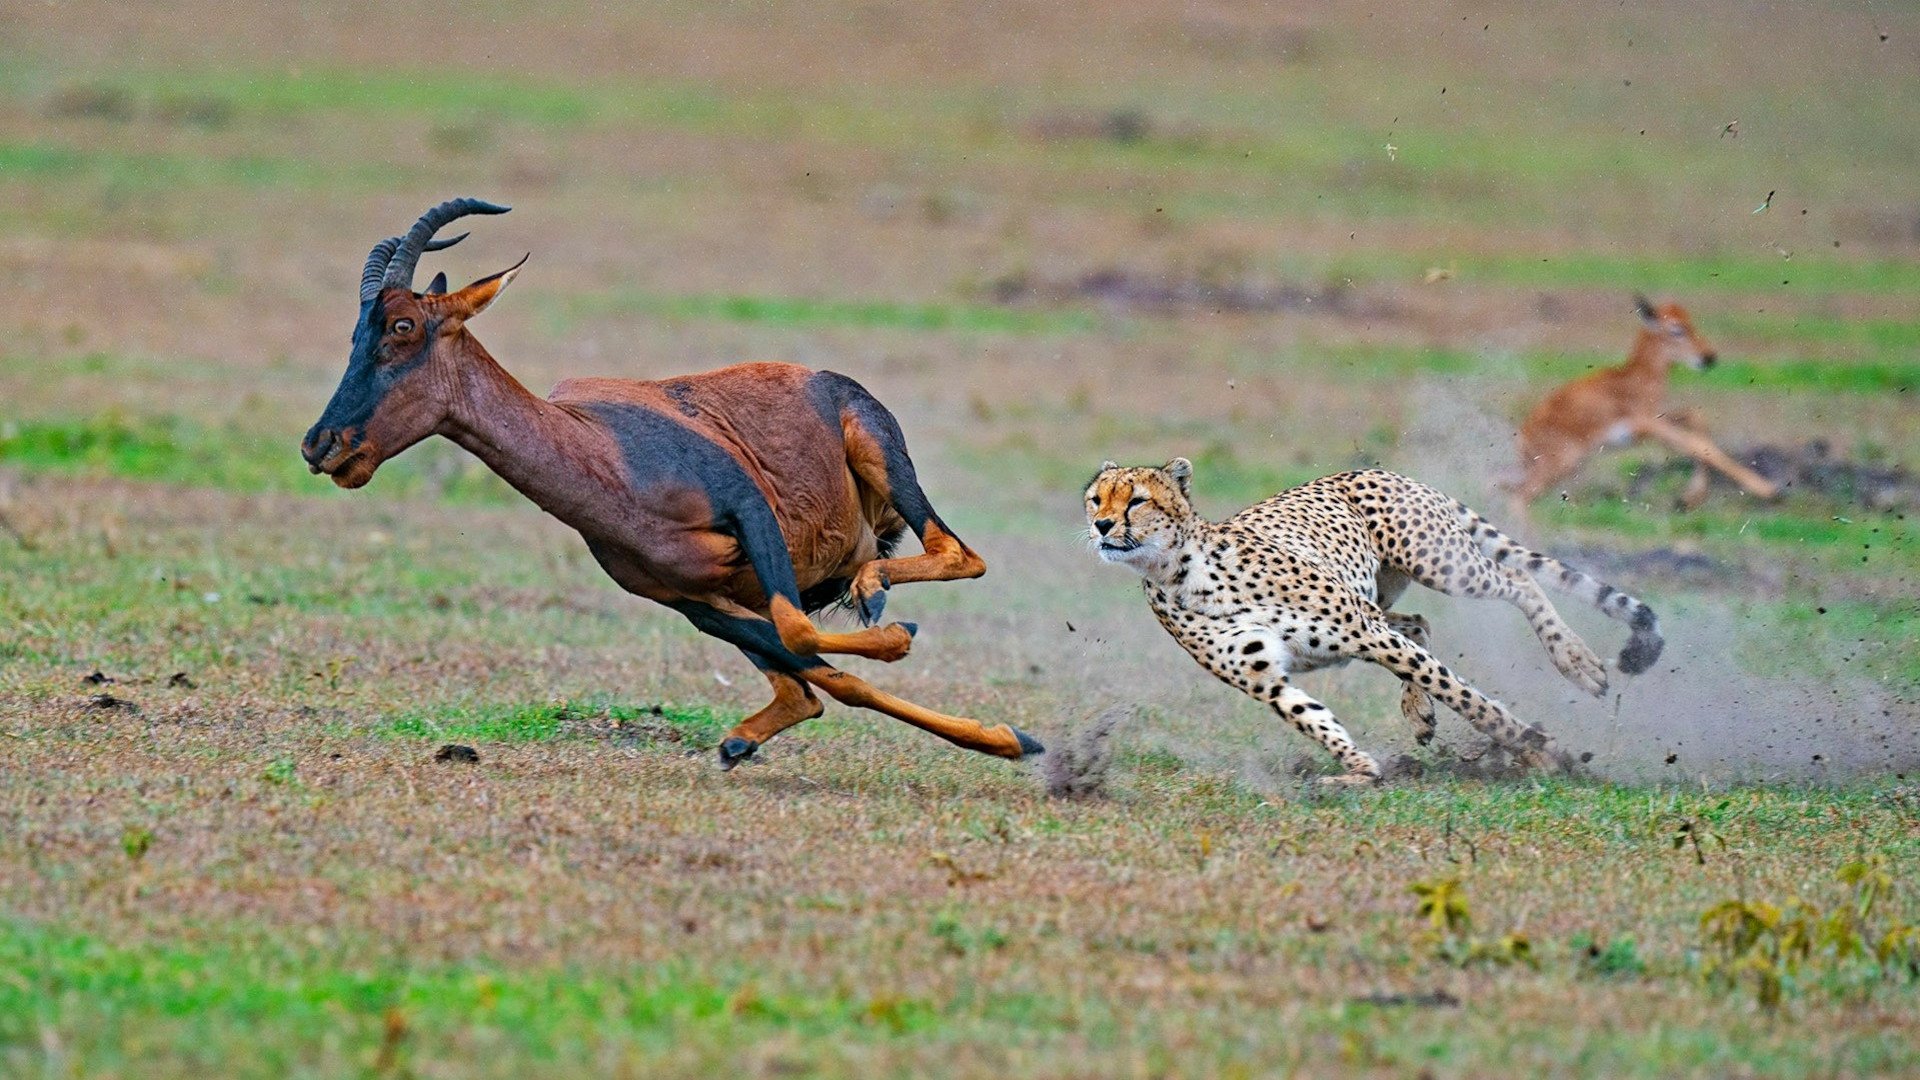 predator chasing prey